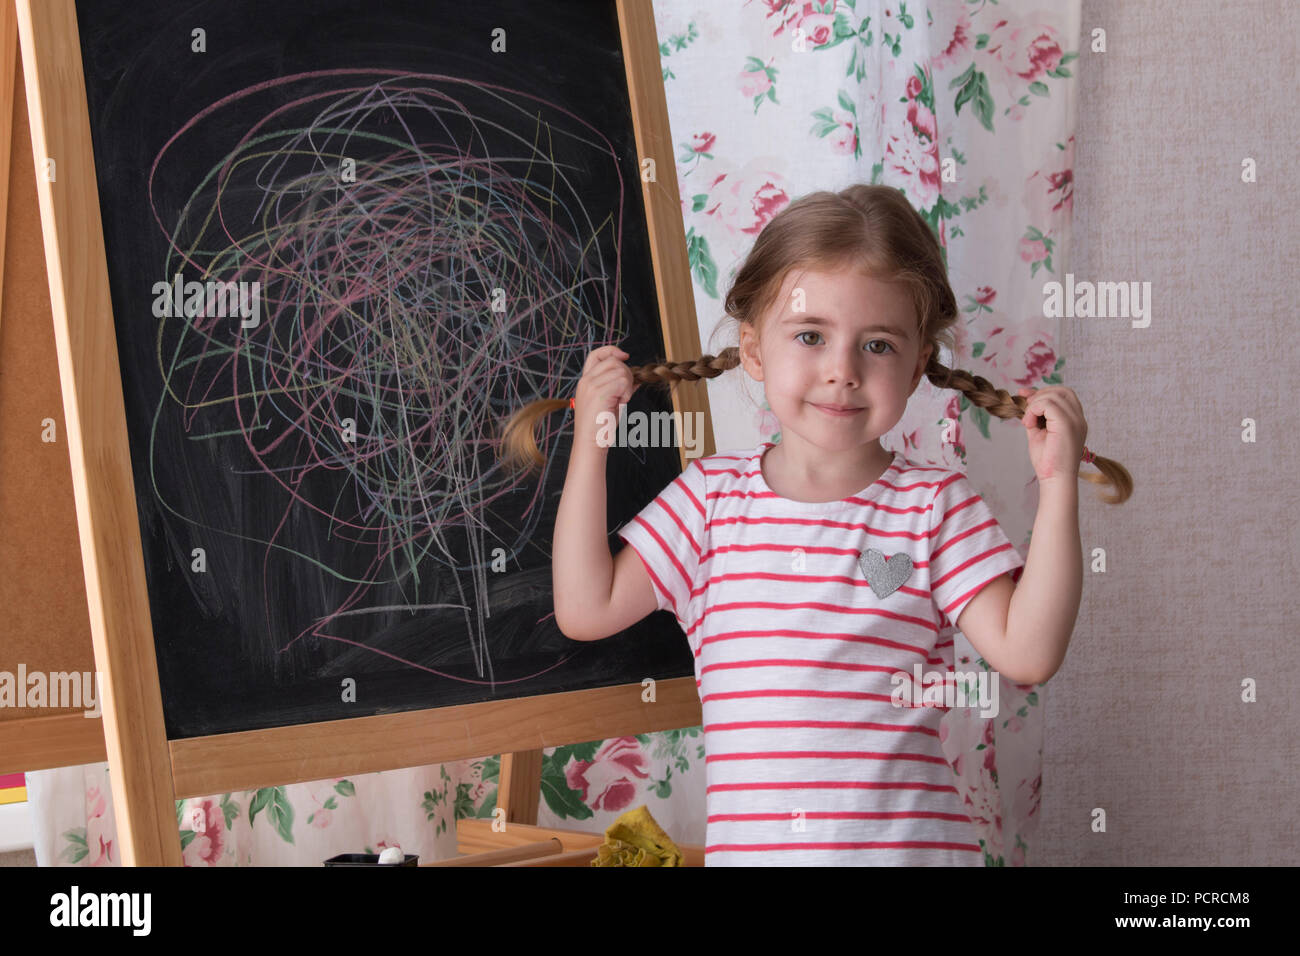 Dessin de l'enfant avec des morceaux de craie de couleur sur le tableau. La créativité et l'expression de jeune fille est à la recherche de l'appareil photo. Concept d'expression et d'apprentissage Banque D'Images